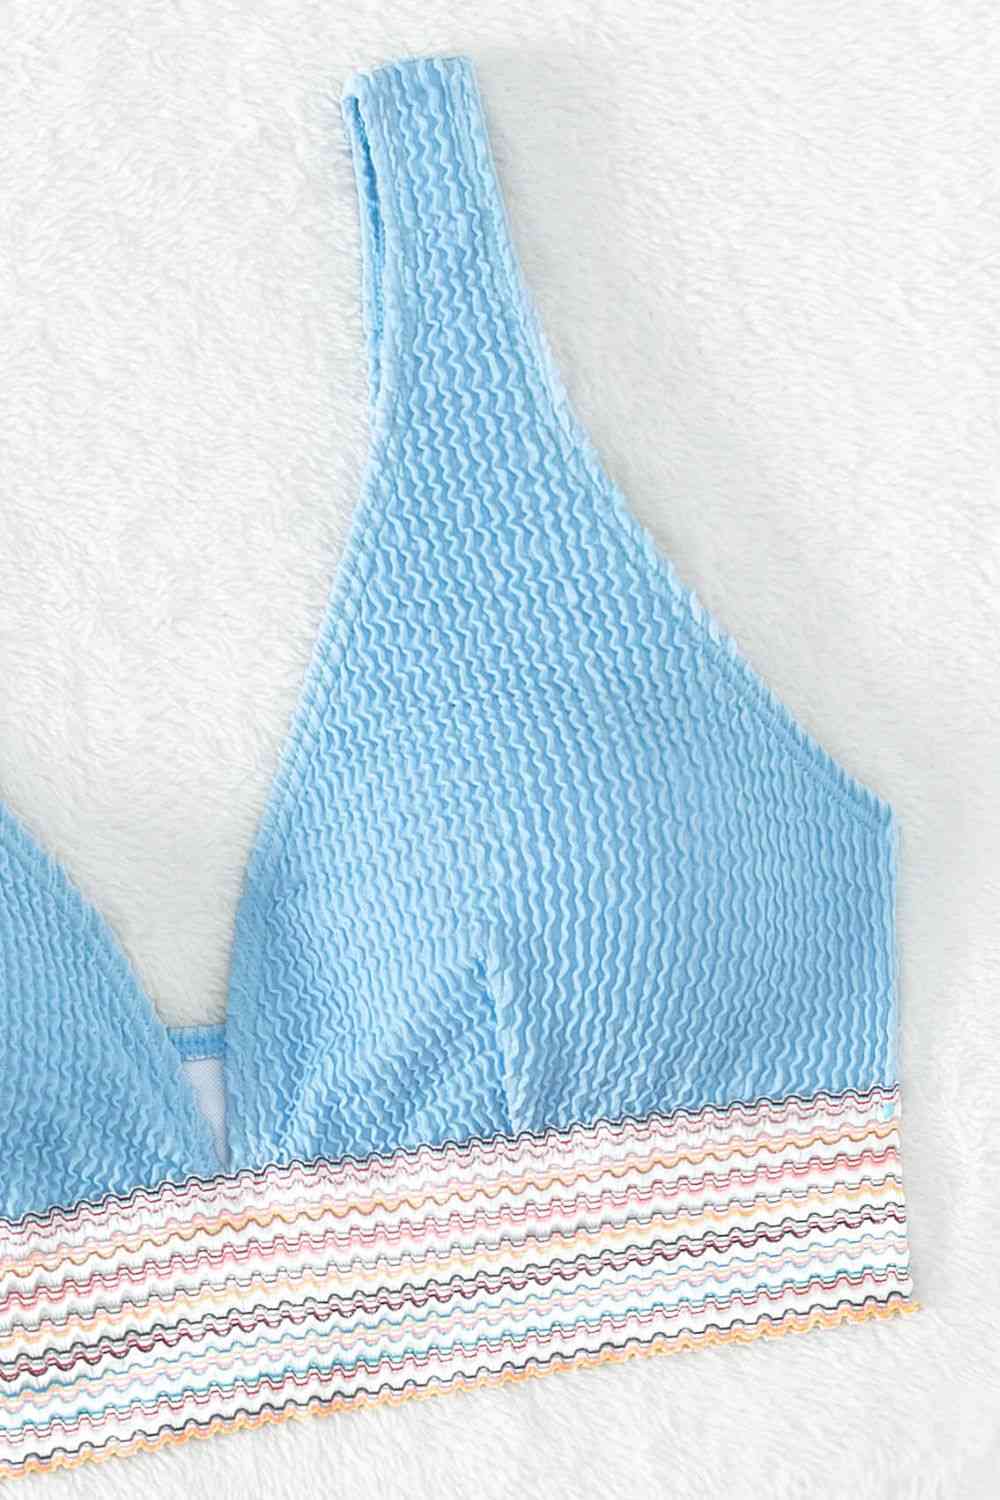 a blue bikini top with a striped bottom